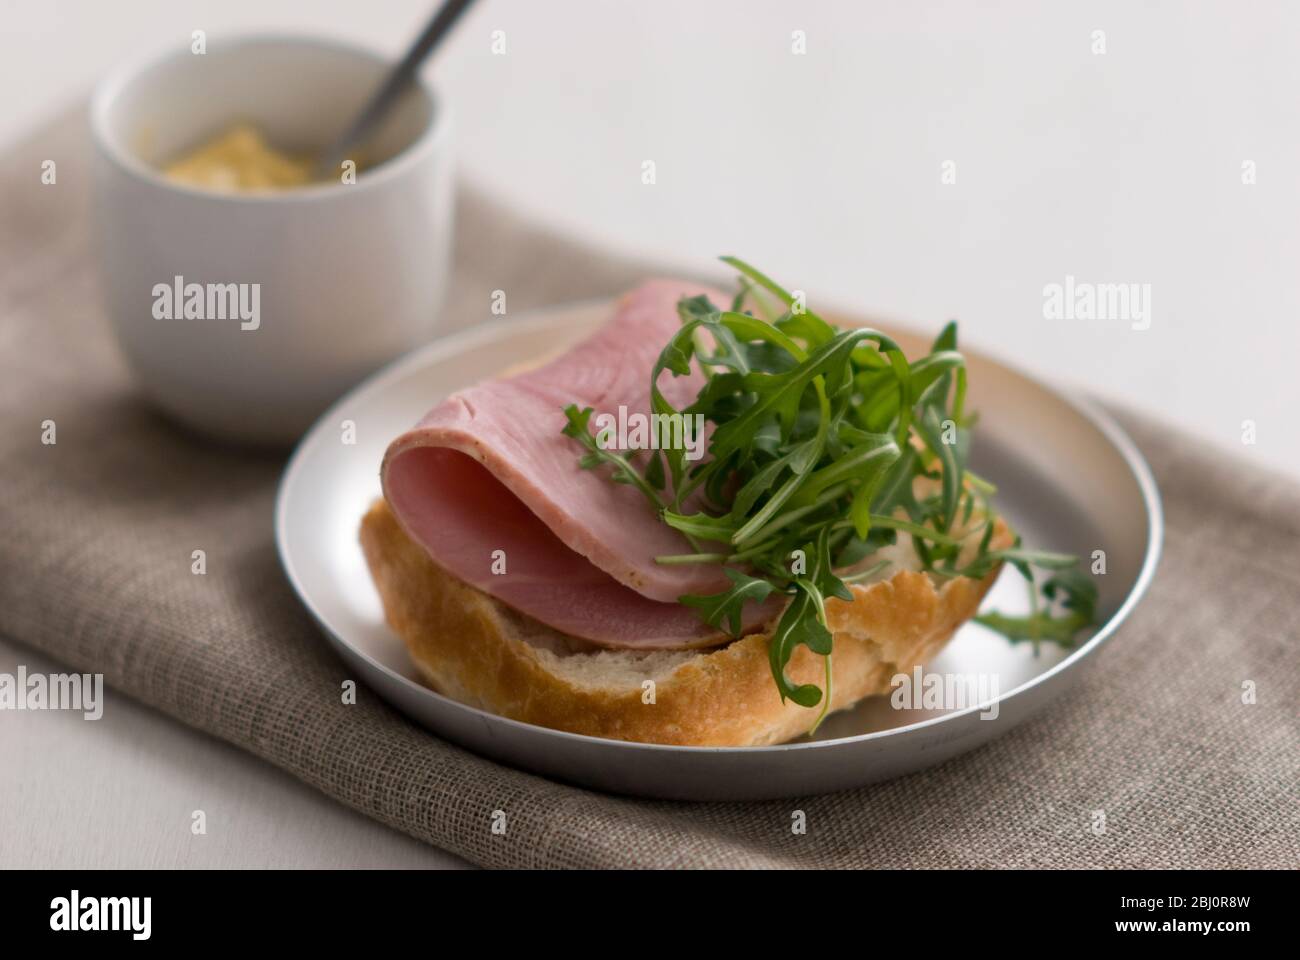 Sandwich ouvert de pain croustillant rouleau rustique, avec une tranche épaisse de jambon de qualité et une garniture de feuille de salade de roquette, avec une petite casserole de moutarde de Dijon - Banque D'Images